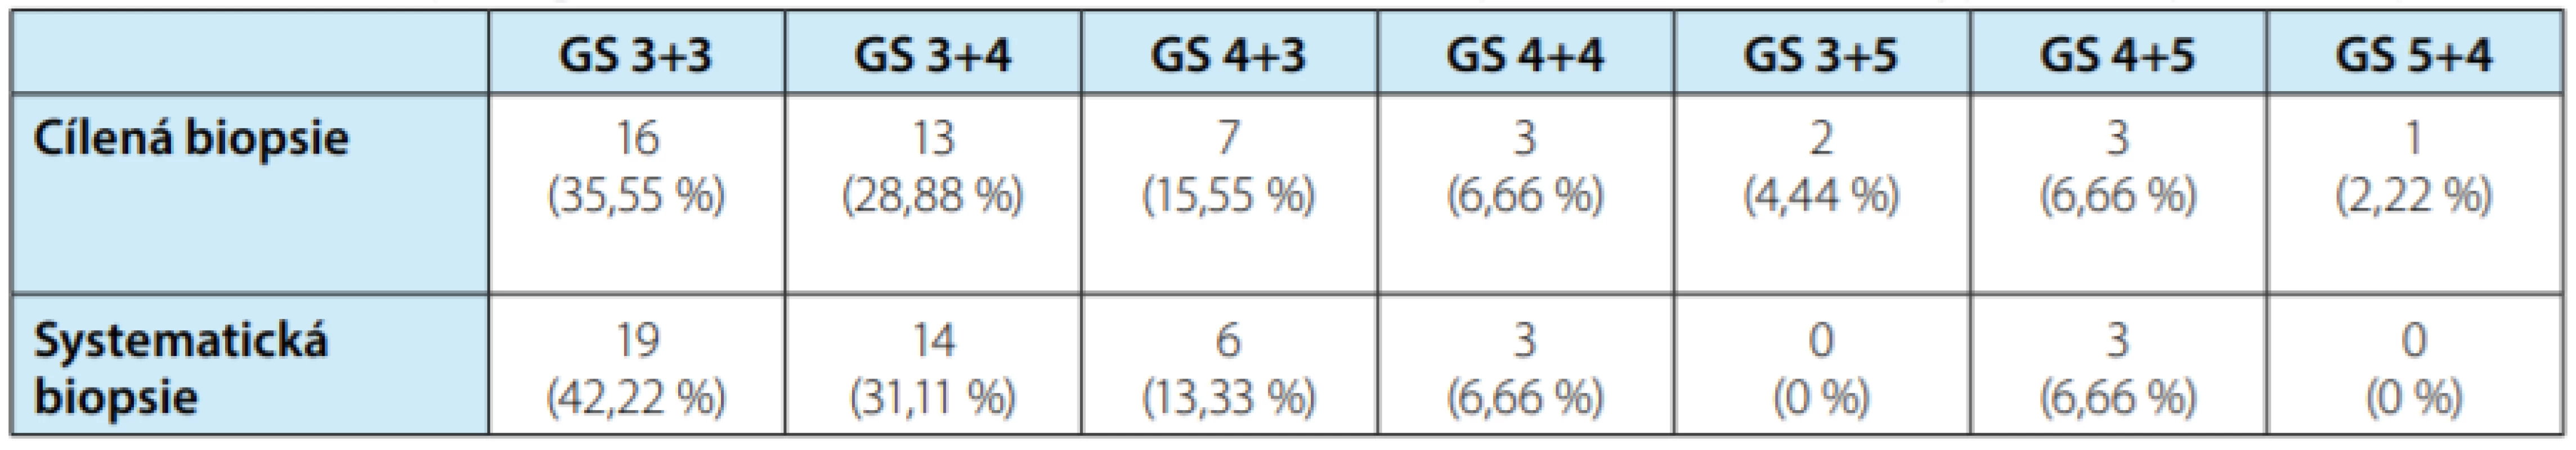 Tabulka porovnávající počty zachycených případů GS u 45 pacientů, kde byly oba typy biopsie pozitivní<br>
Tab. 2. Table comparing the numbers of detected cases of GS in 45 patients where both types of biopsies were positive